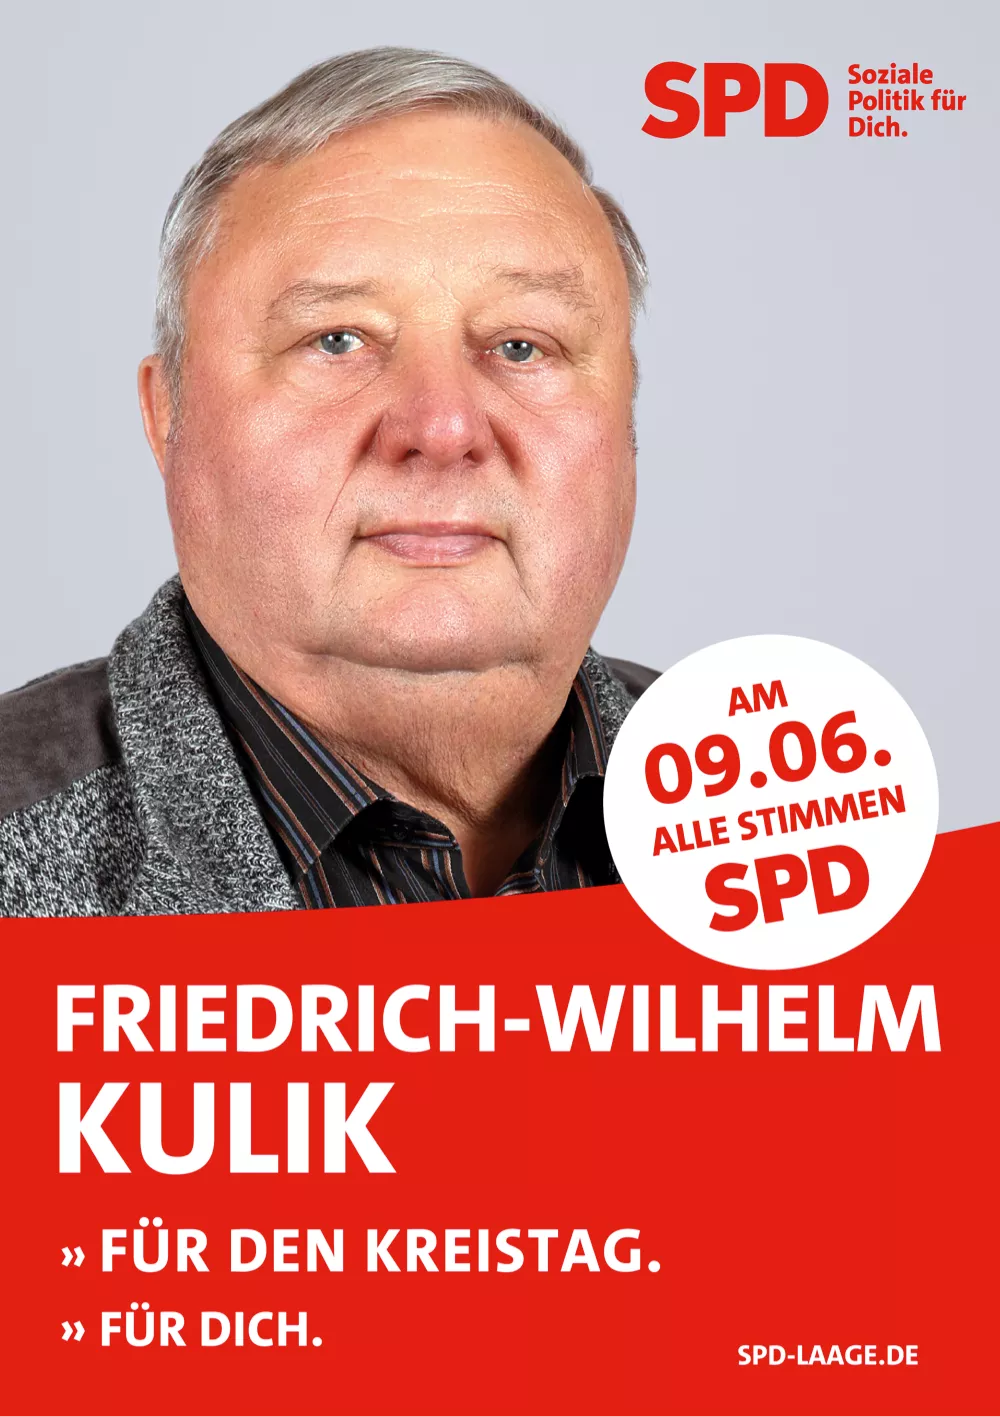 Friedrich-Wilhelm Kulik